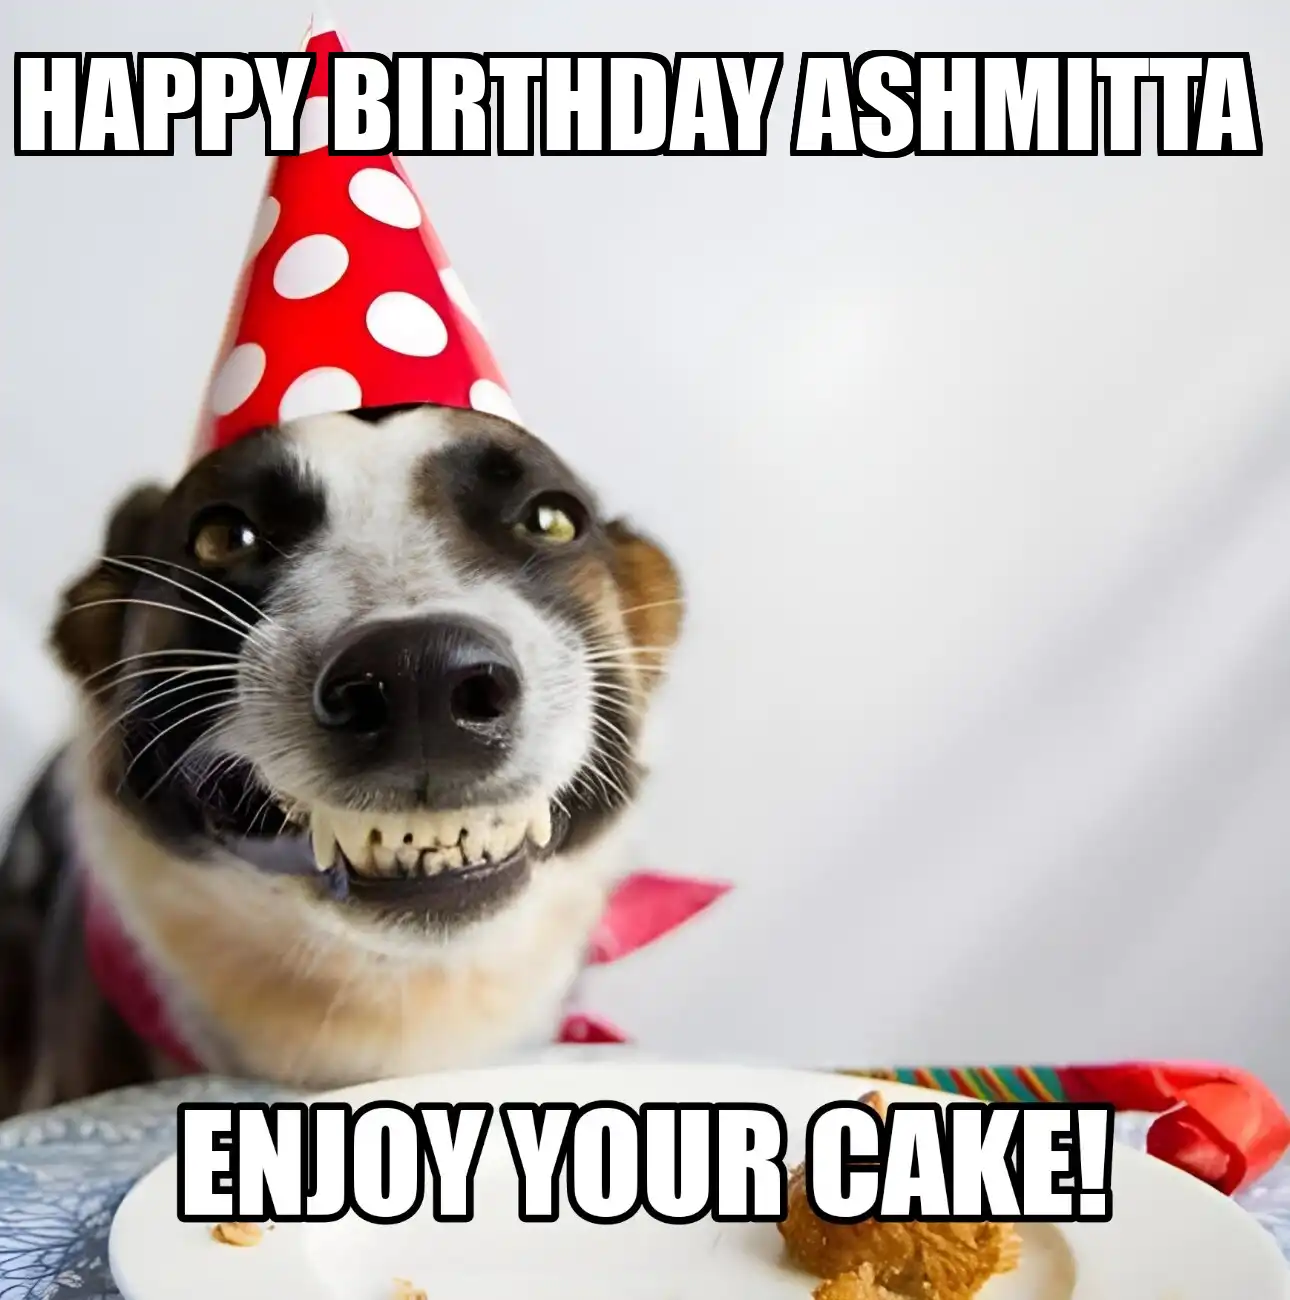 Happy Birthday Ashmitta Enjoy Your Cake Dog Meme